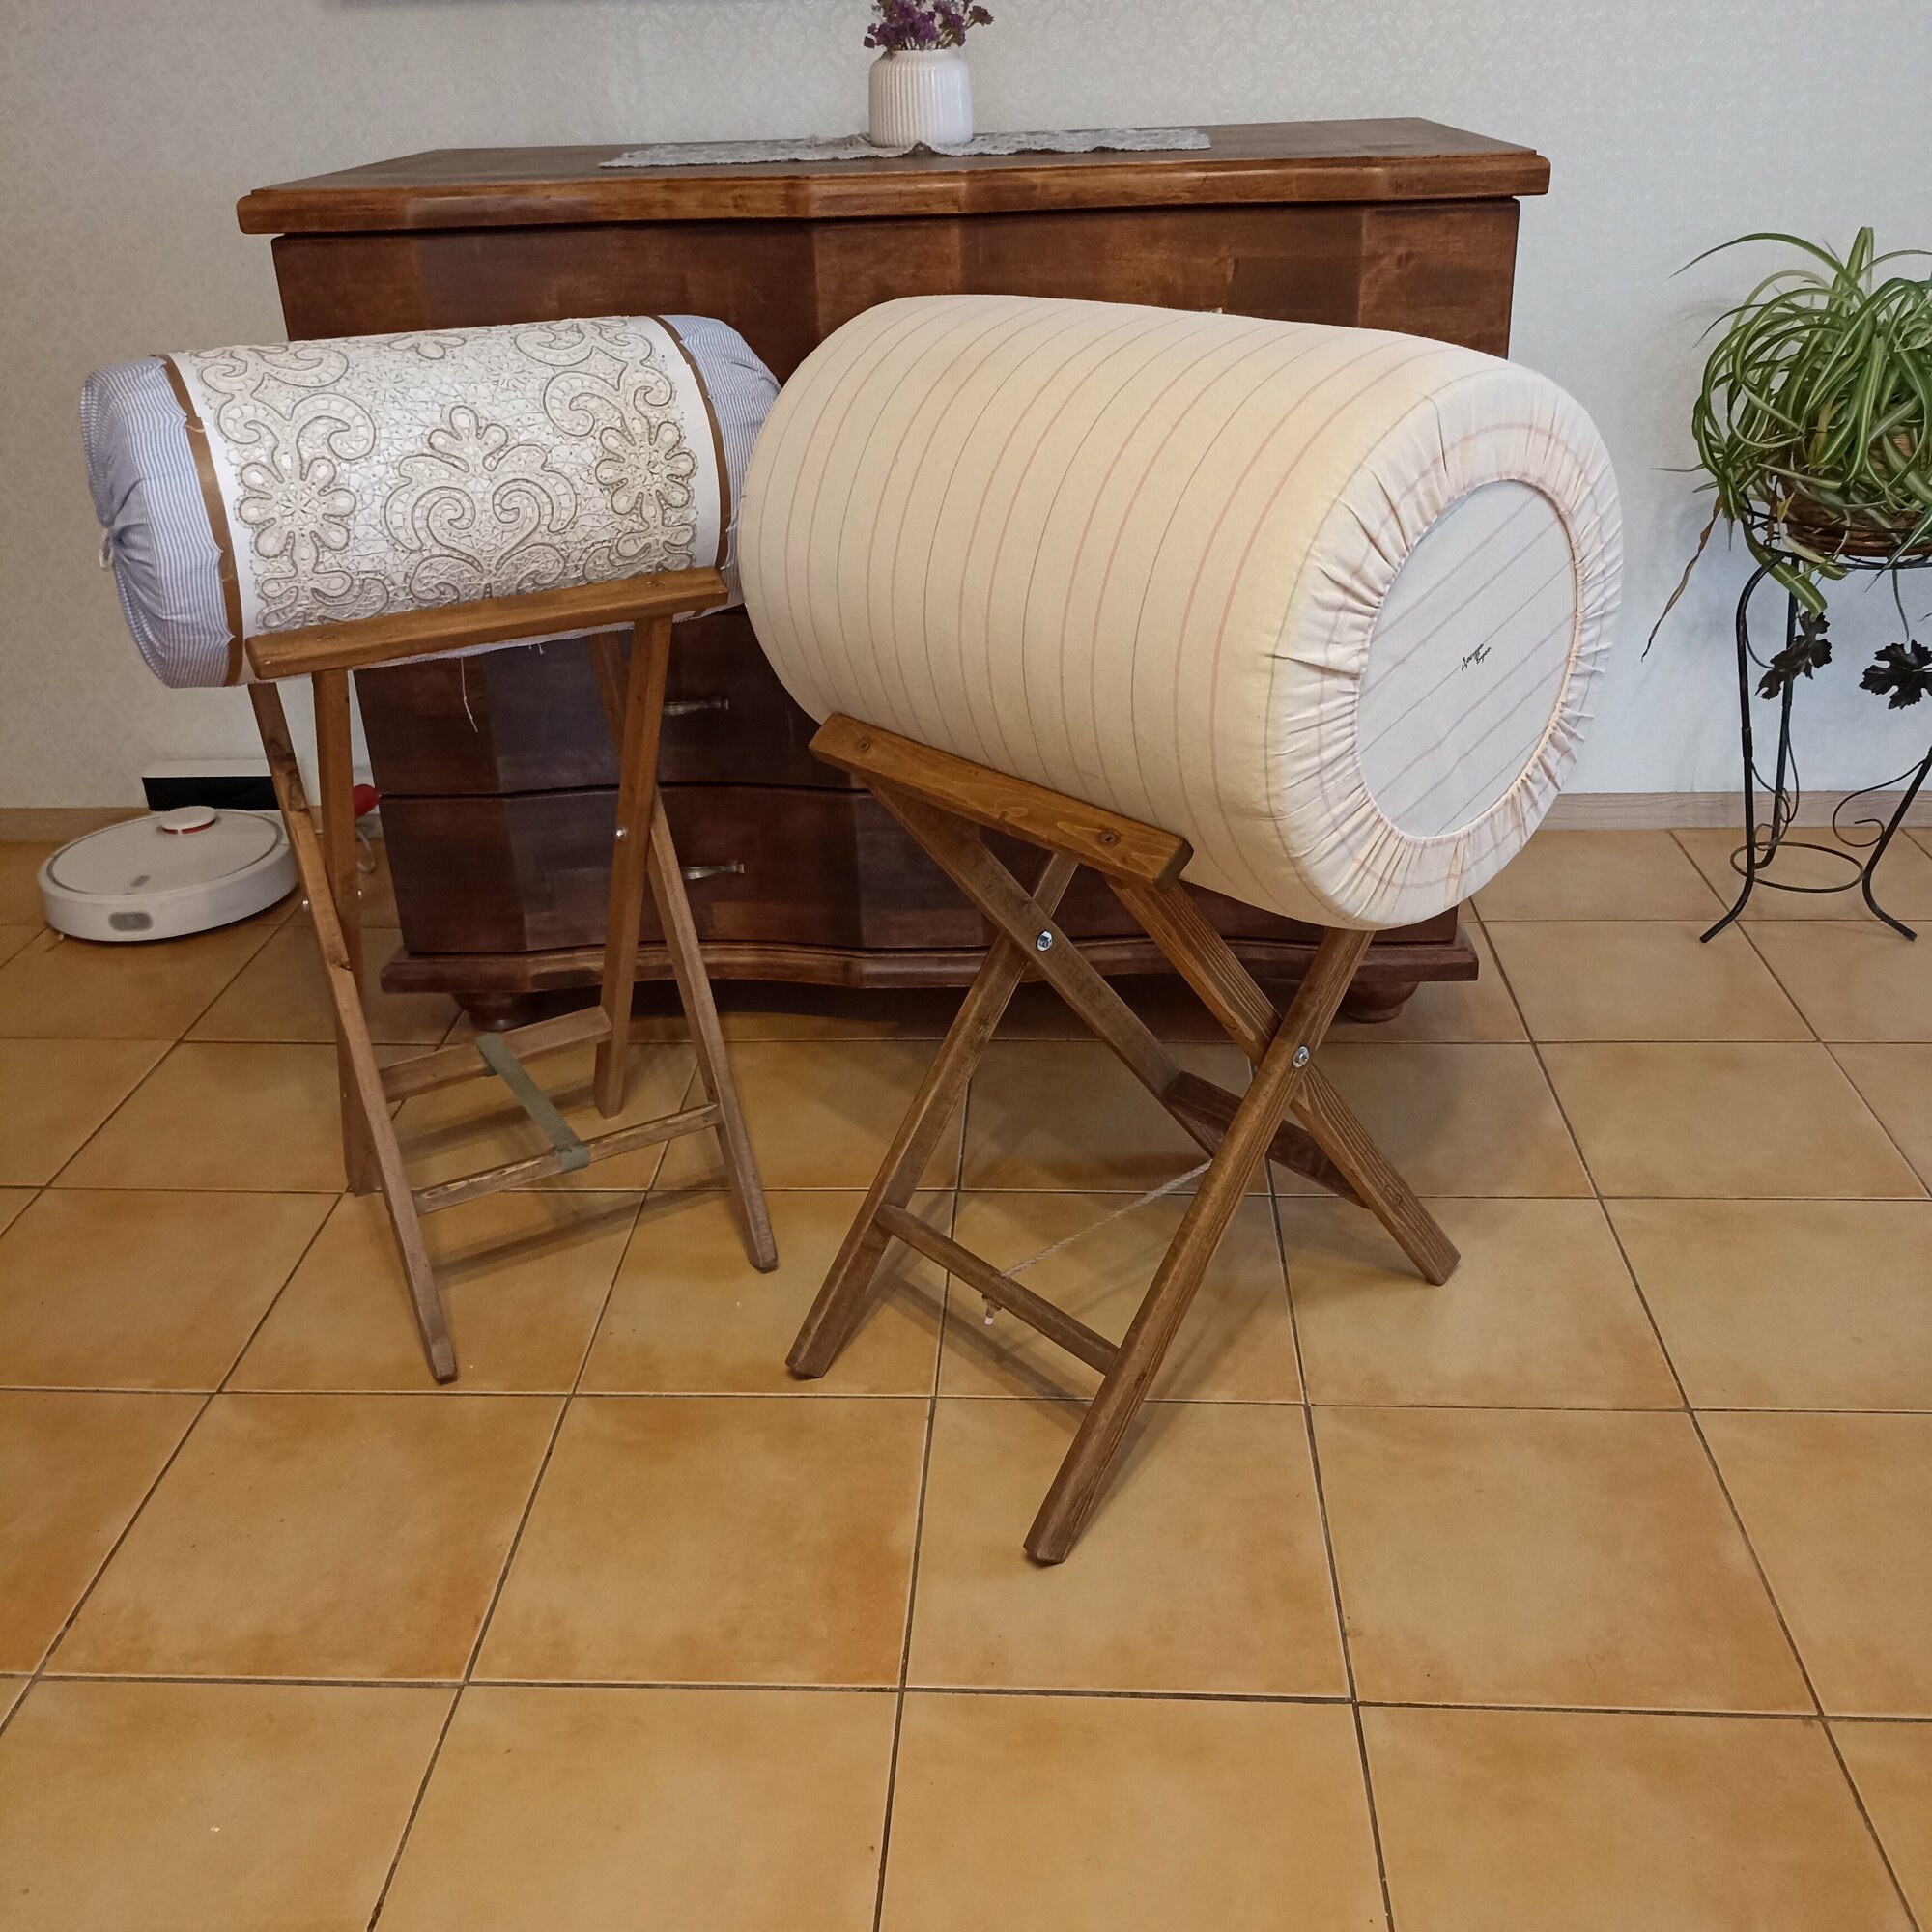 Подушка большая (валик), производство Досугивуги, для кружевоплетения и плетения макраме 40х60см, 9 кг.